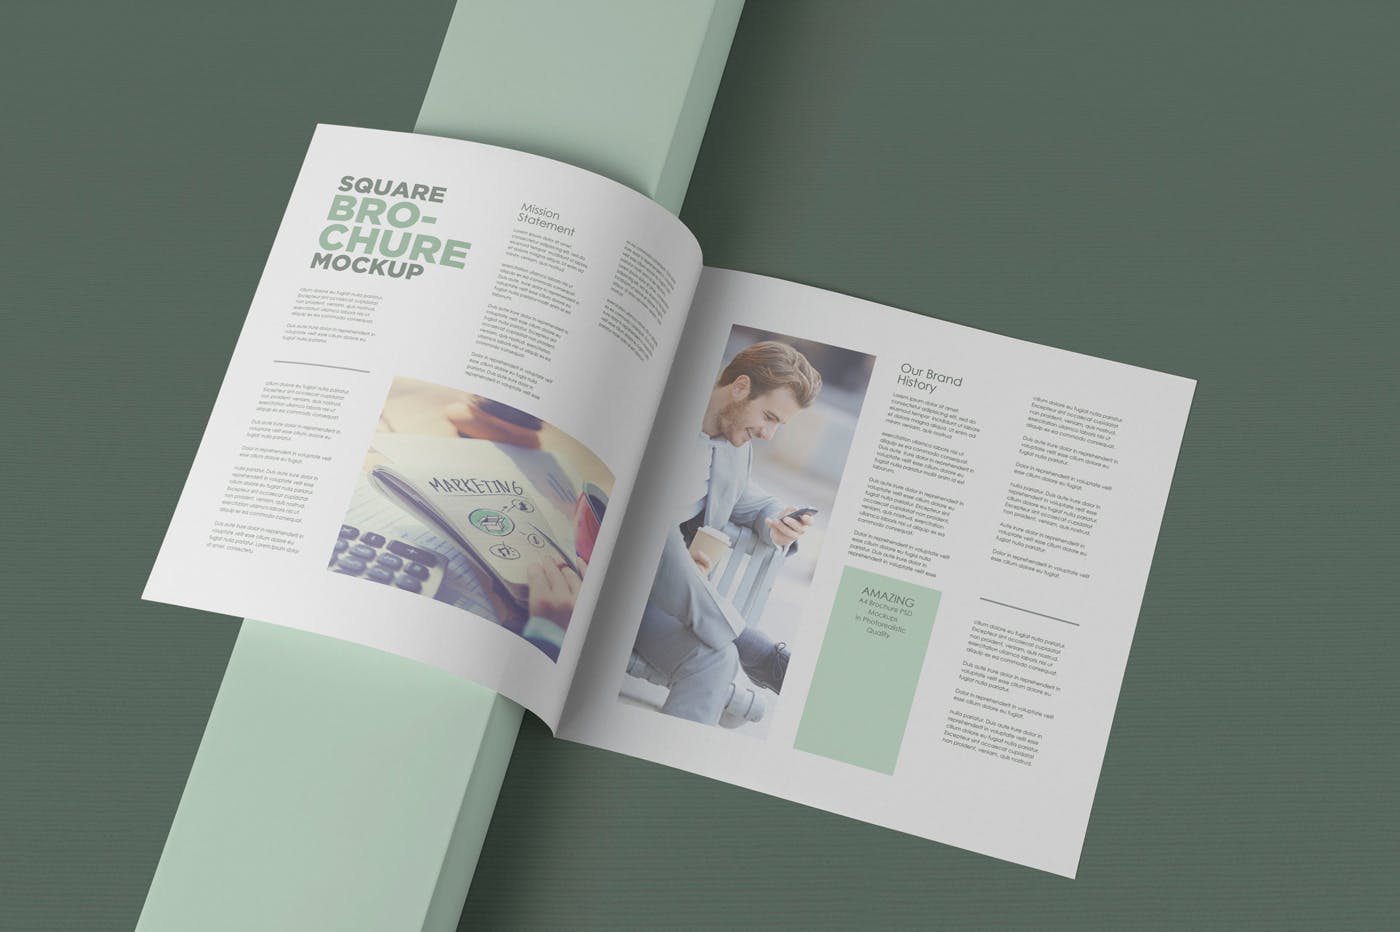 方形对折页宣传手册设计效果图样机第一素材精选 Square Bifold Brochure Mockups插图(2)